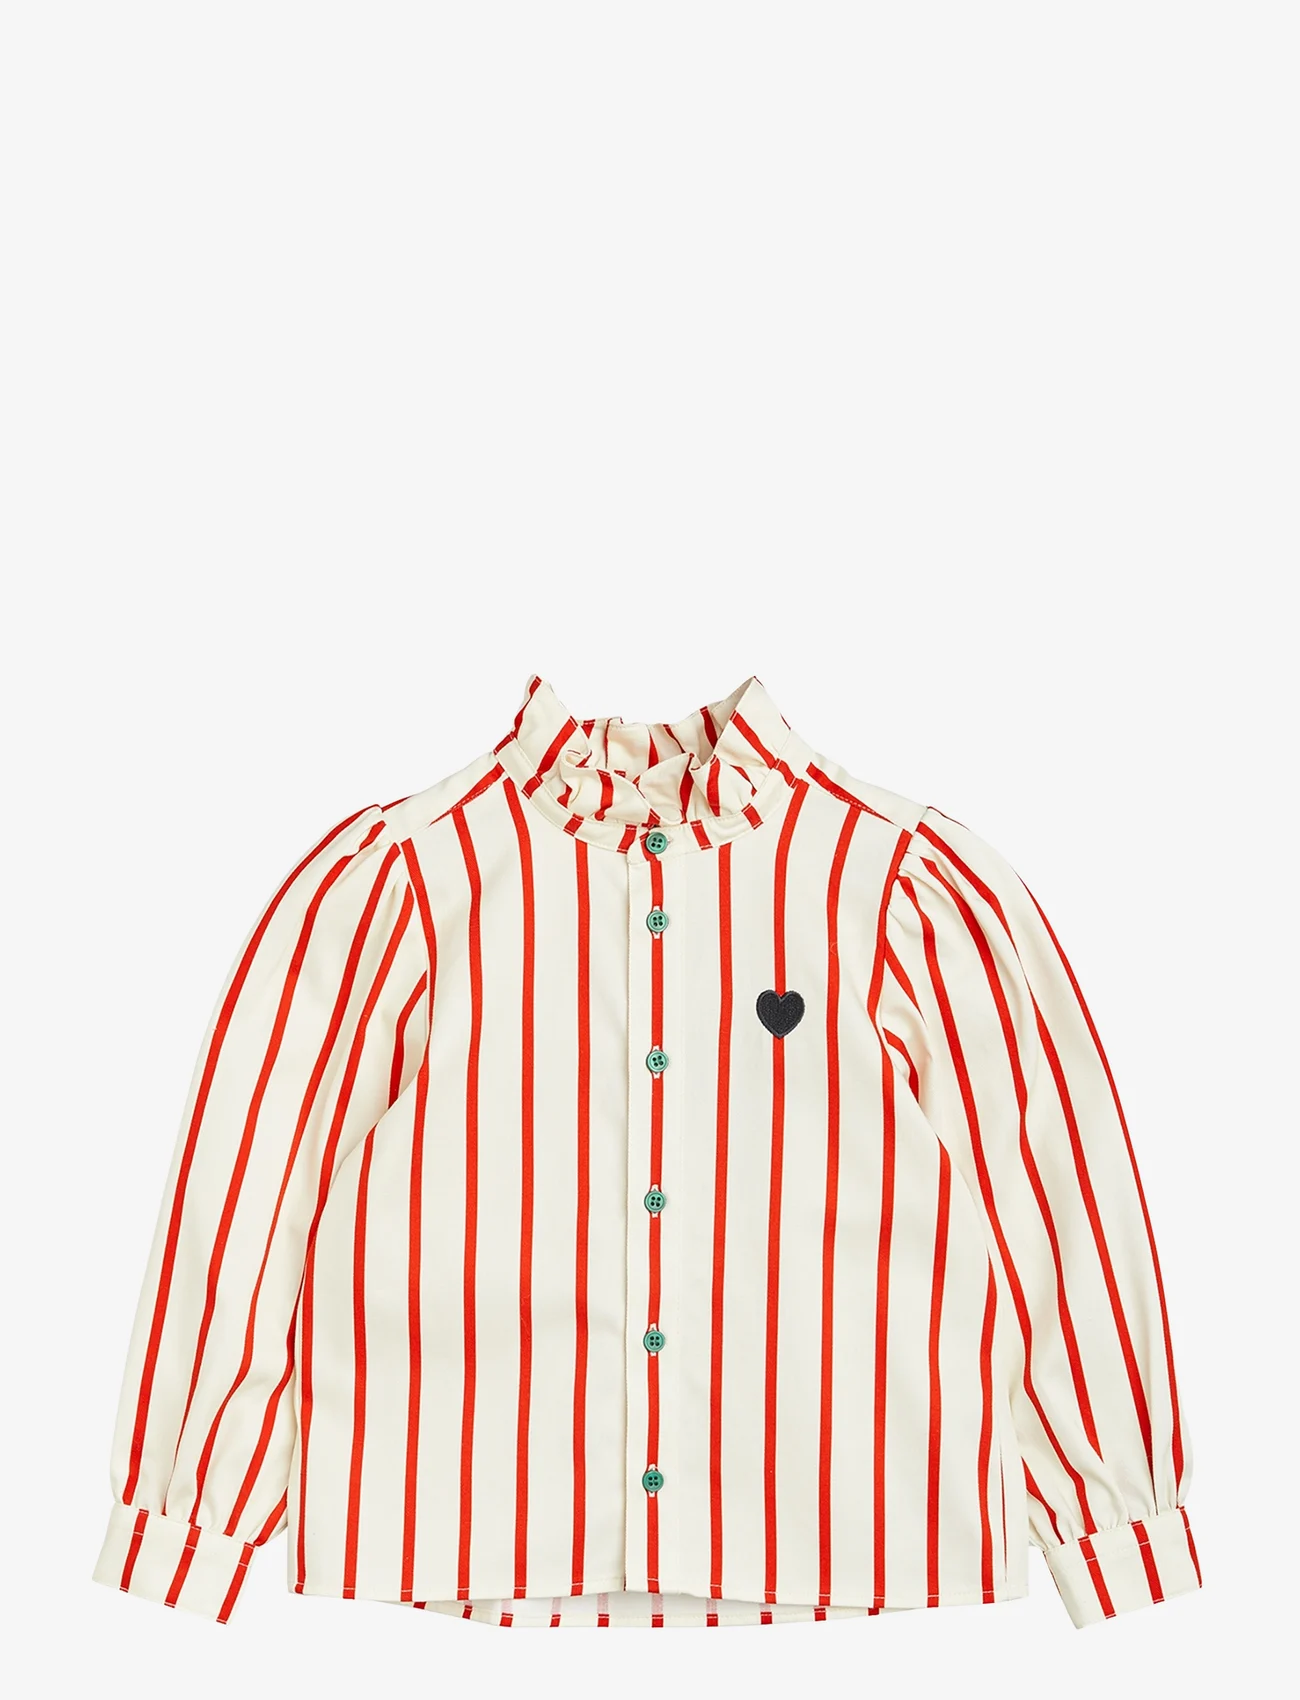 Mini Rodini - Stripe woven blouse - vasaros pasiūlymai - multi - 0